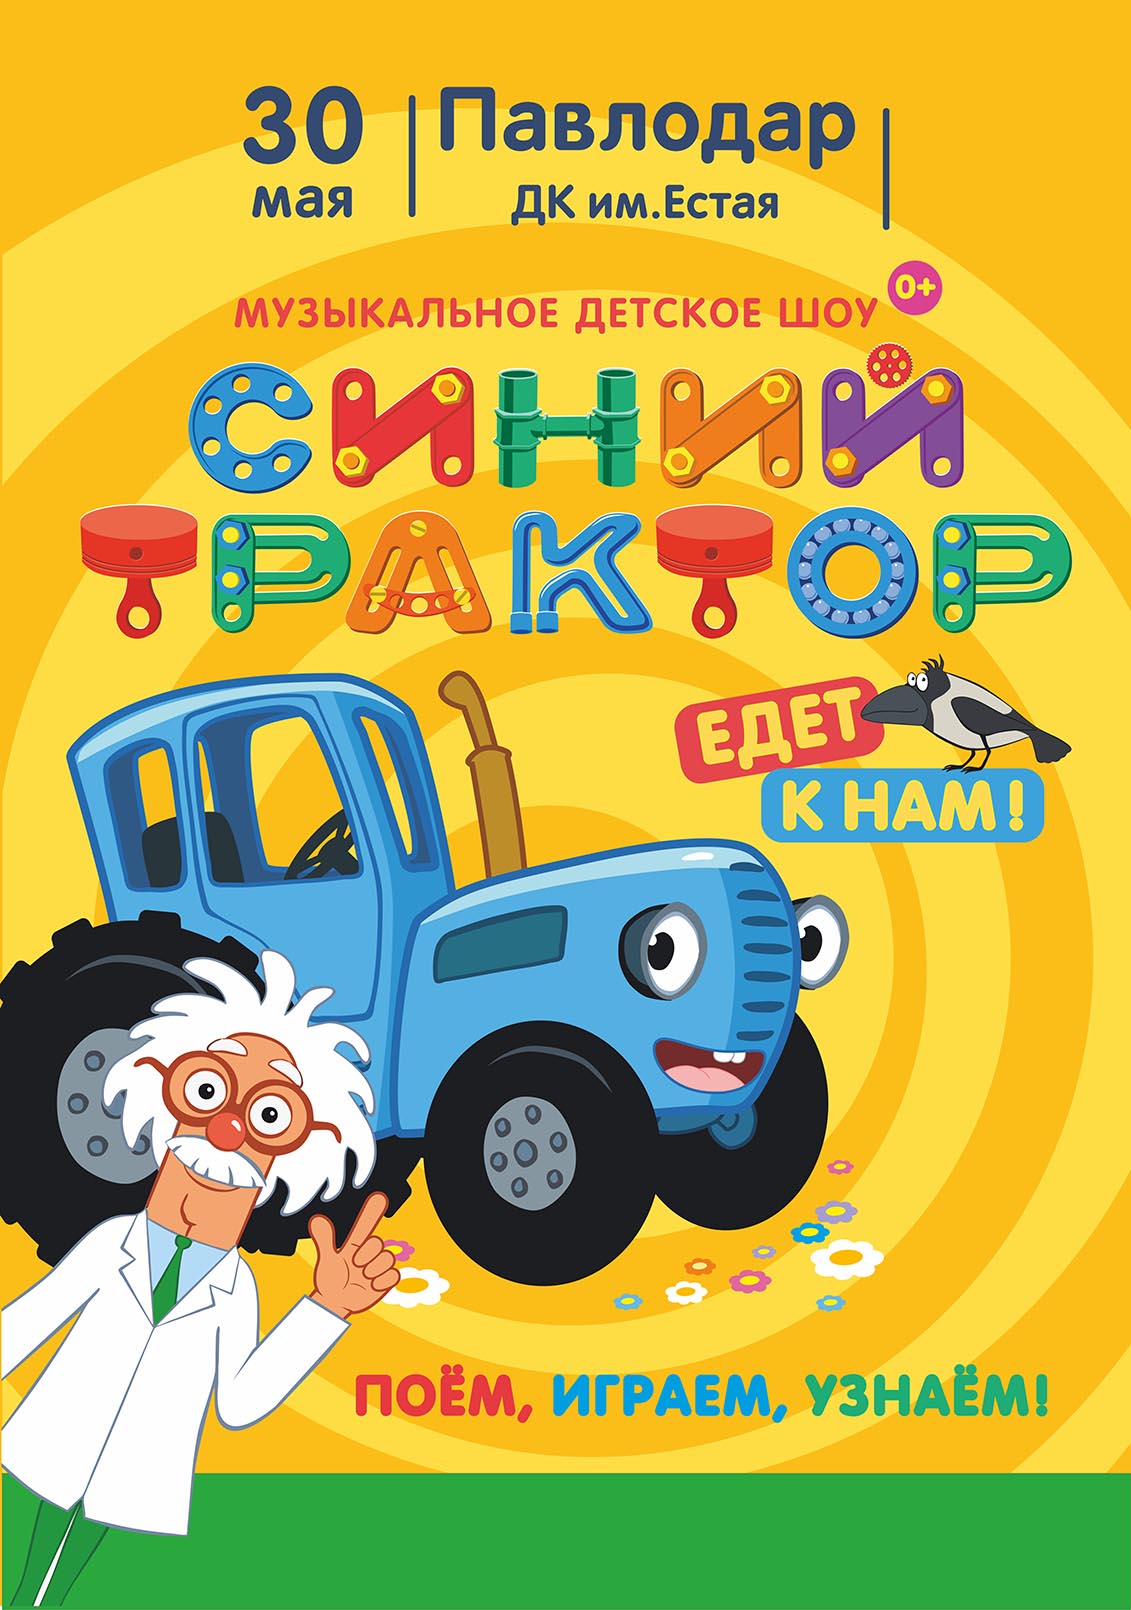 Афиша меропрития: Шоу "Синий трактор" в Павлодаре сеанс 17:00